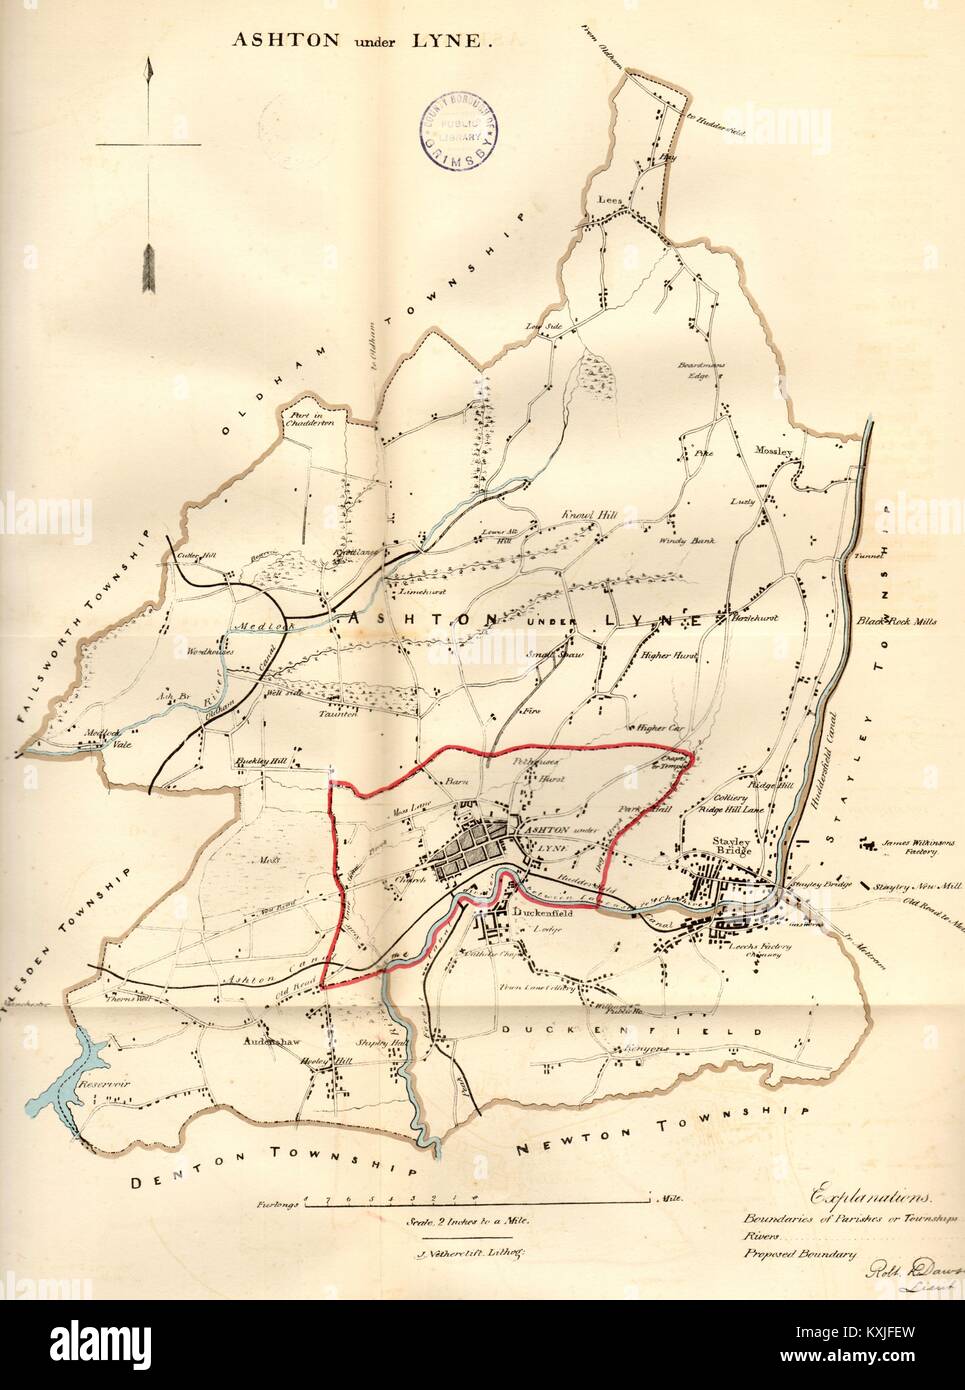 ASHTON UNDER LYNE town/borough plan. REFORM ACT. Stalybridge. DAWSON 1832 map Stock Photo